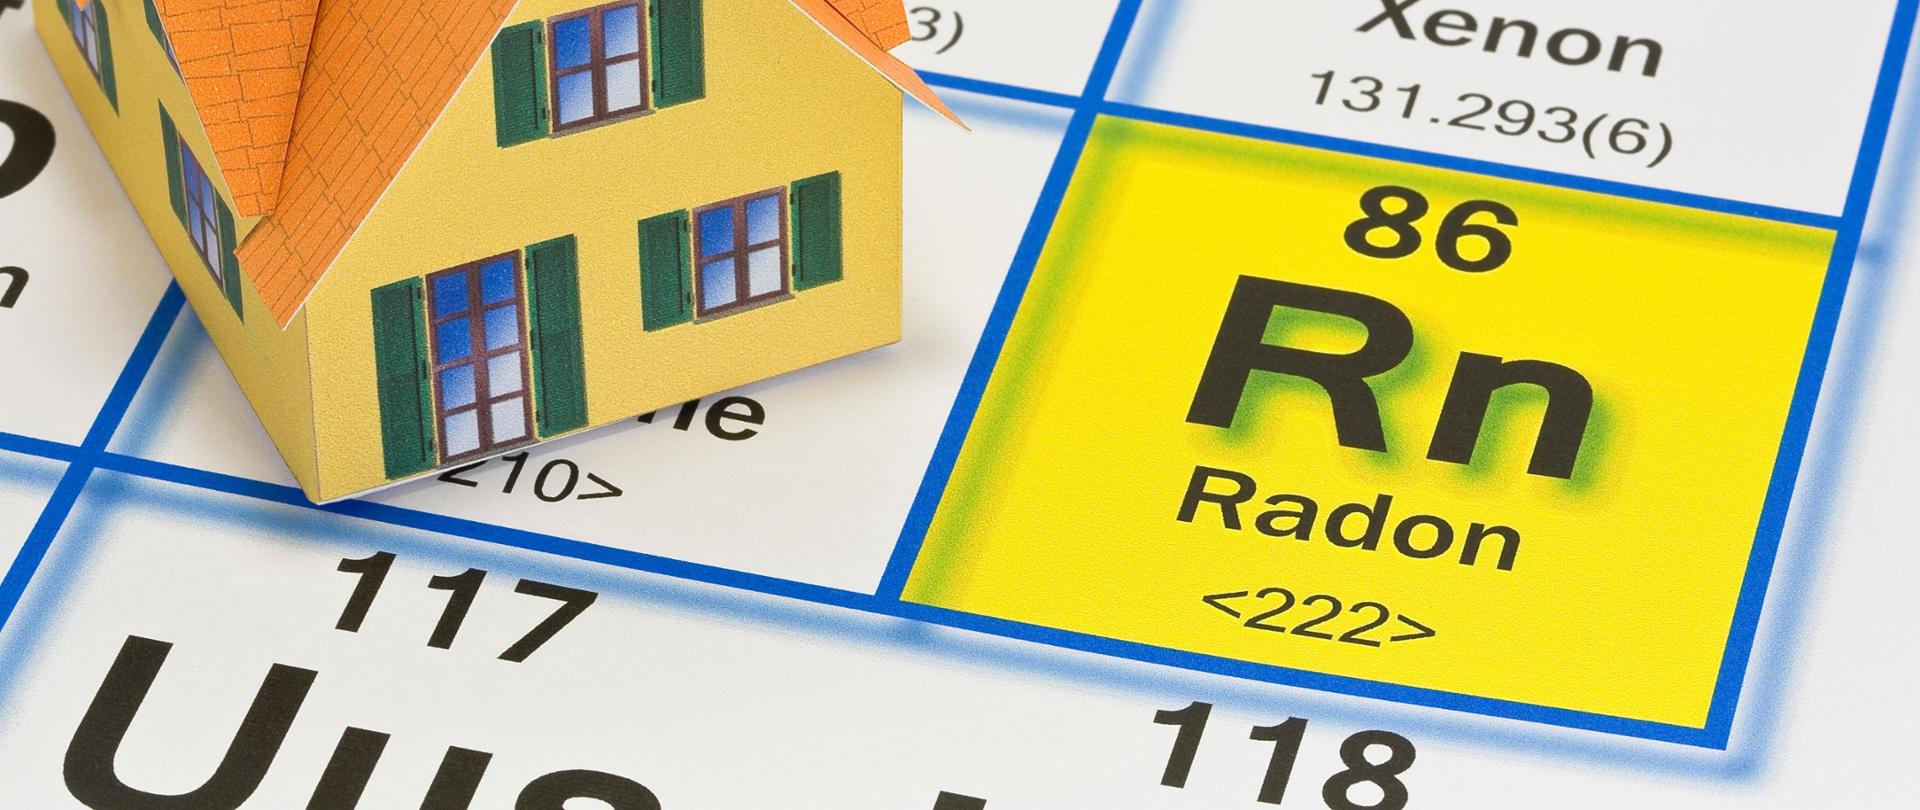 Powiększony fragment układu okresowego pierwiastków ze zbliżeniem na symbol chemiczny radonu - Rn. Obok rysunek domu jednorodzinnego.